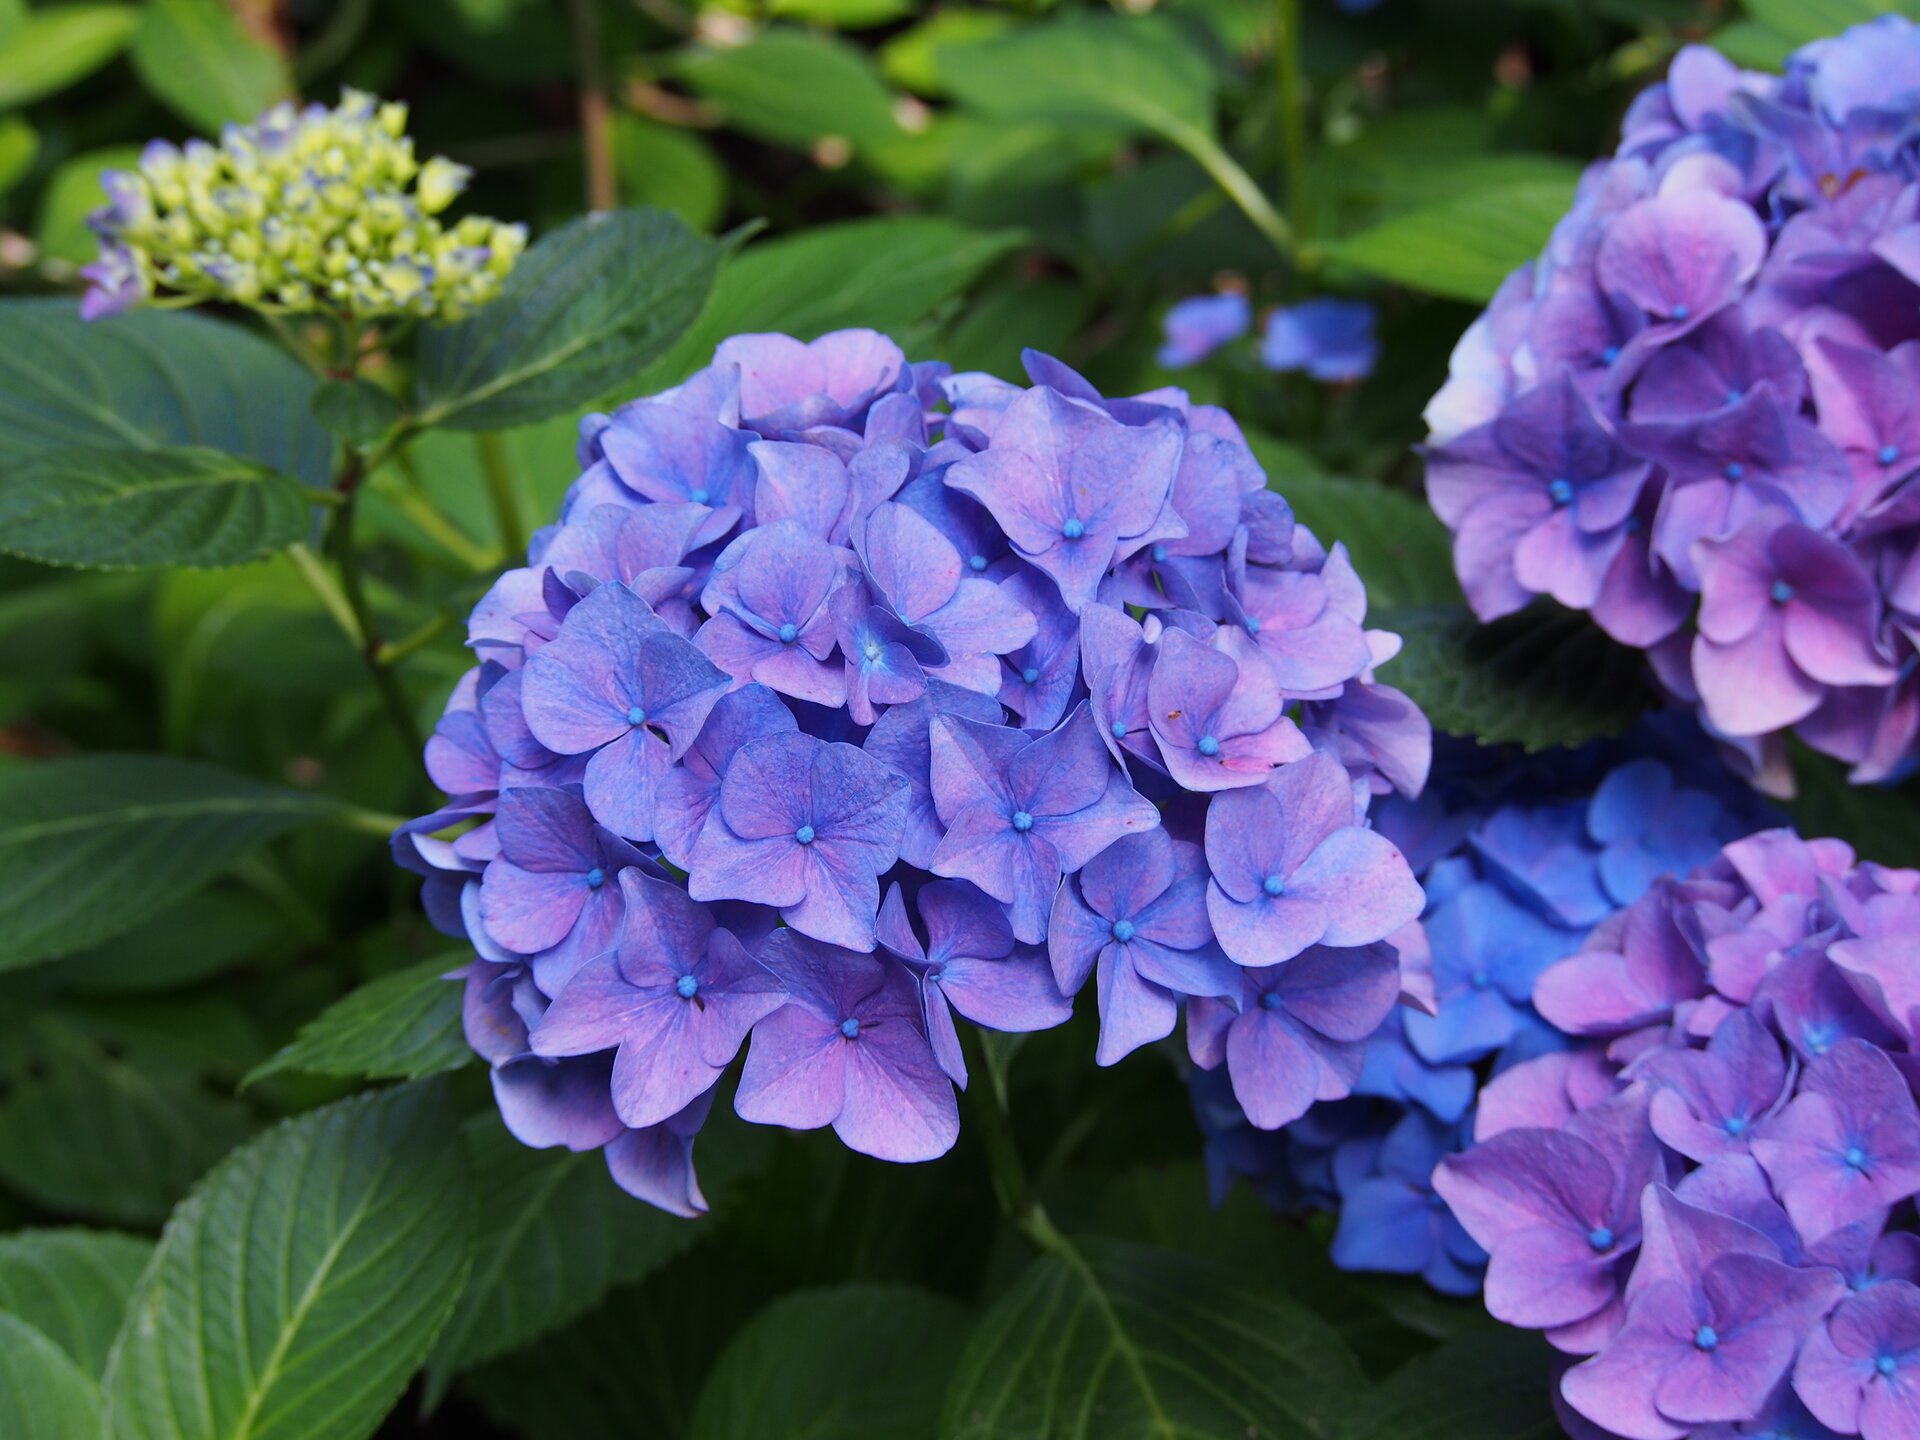 Ilustracja przedstawia fioletowoniebieskie kwiaty hortensji. Kwiaty są zebrane w obfity kwiatostan. 